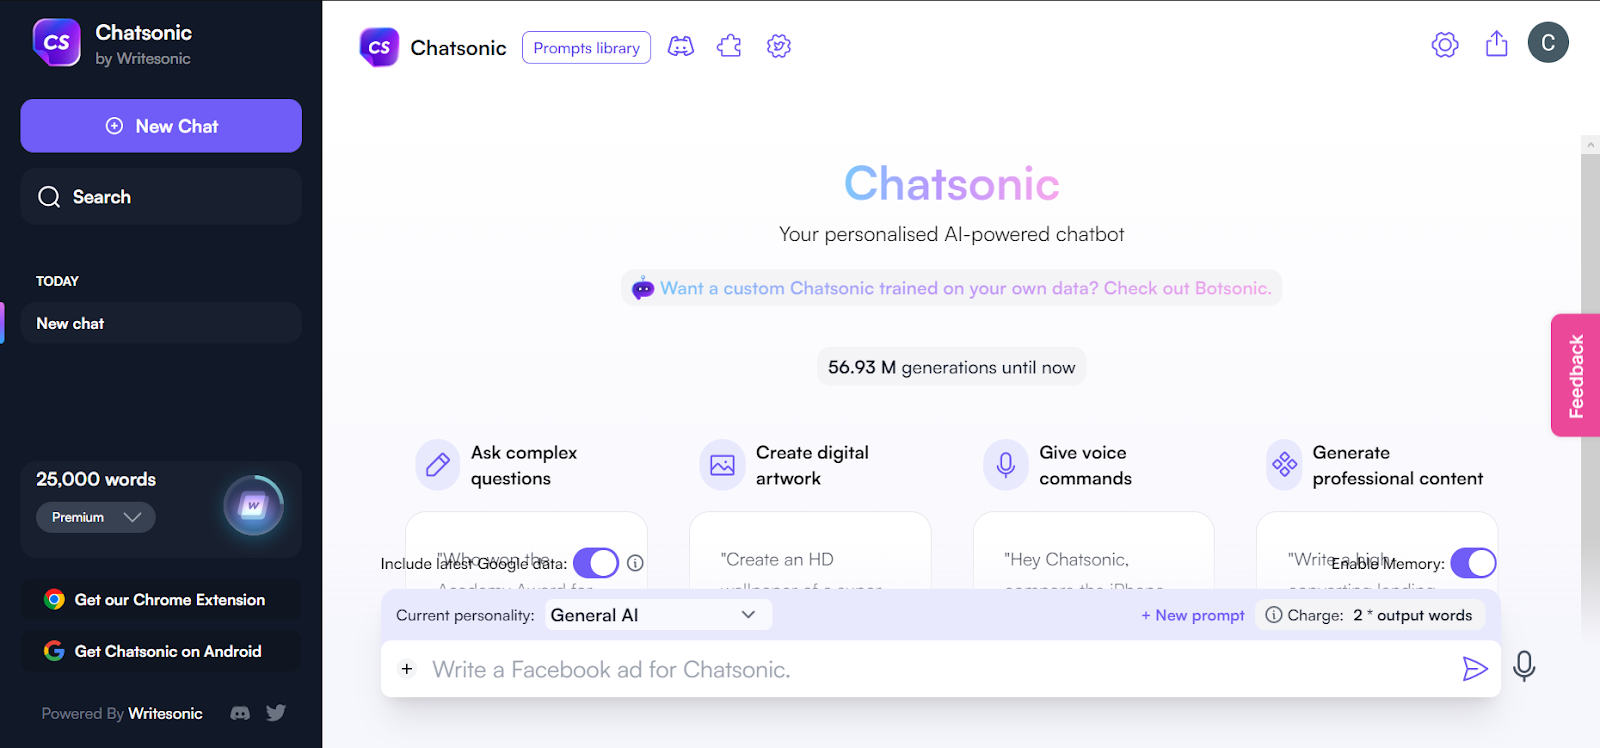 Chatsonic by Writesonic